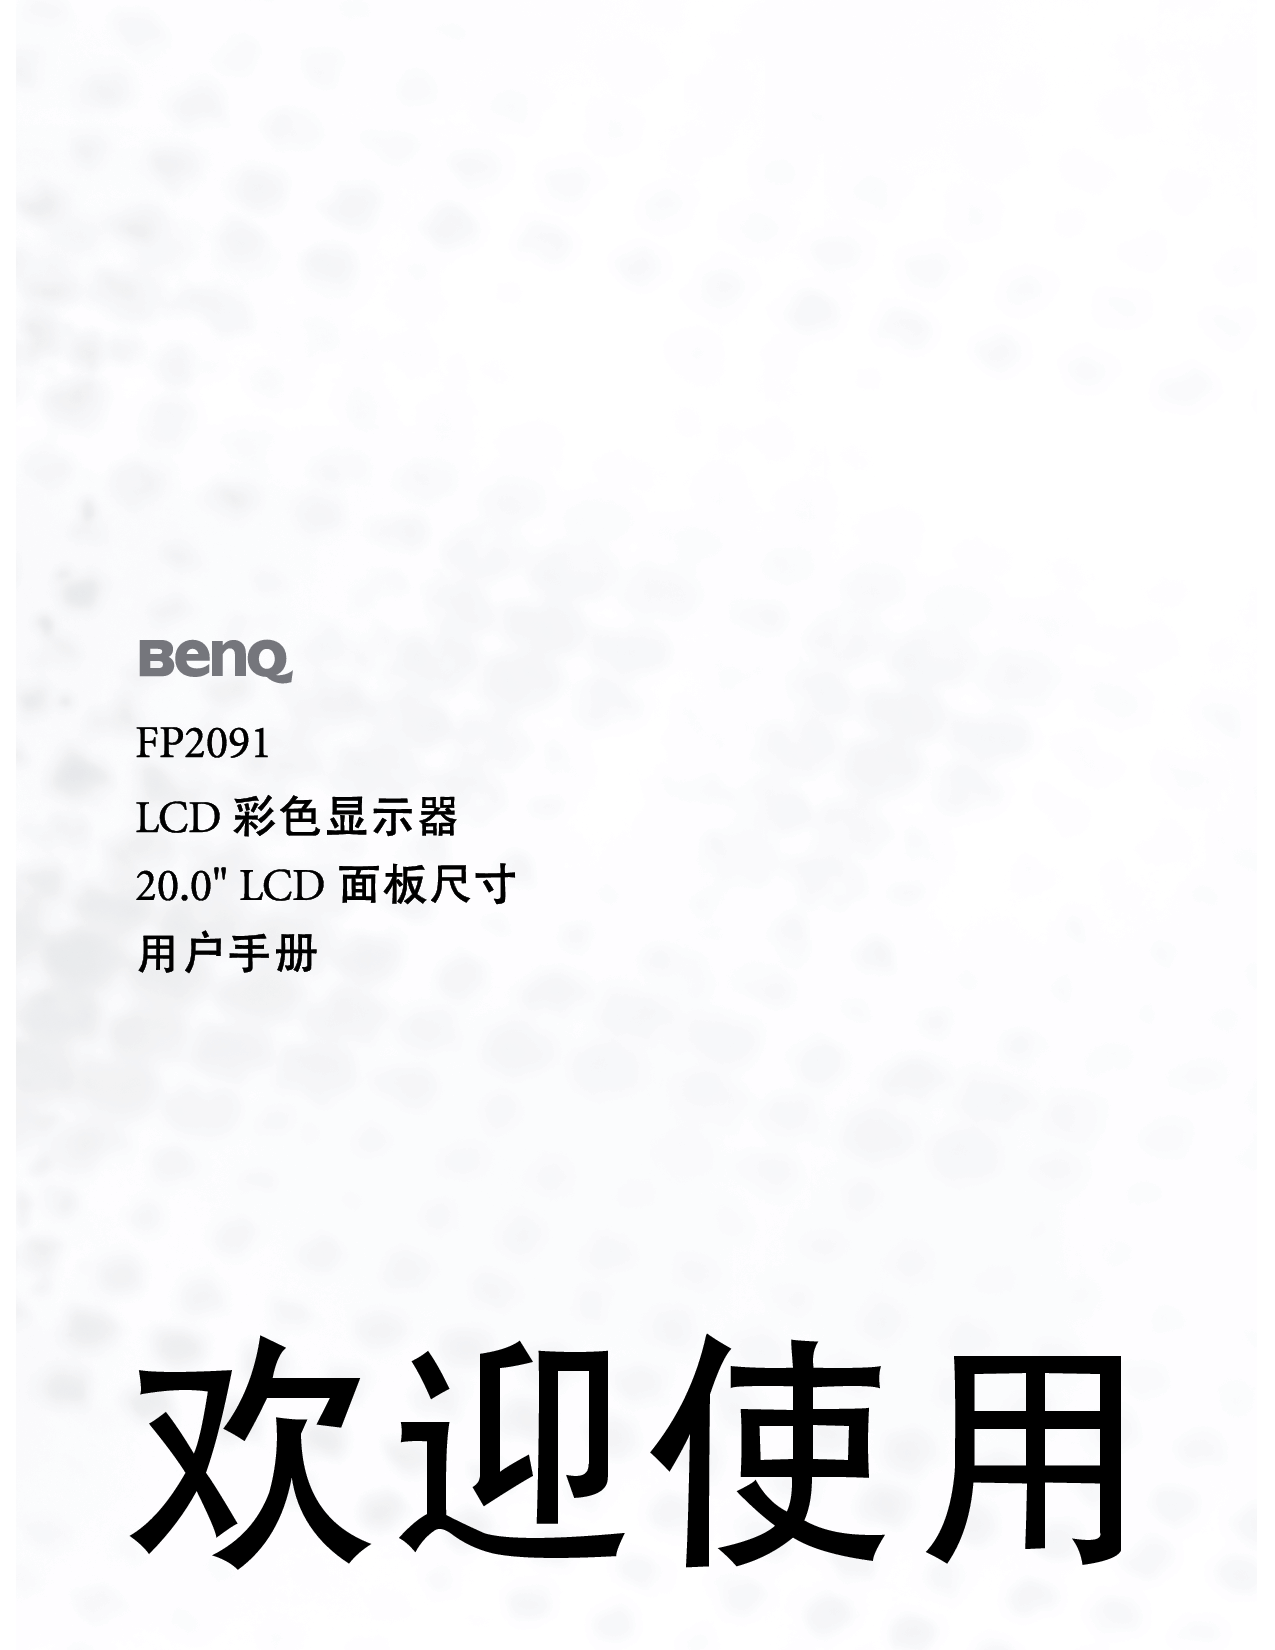 明基 Benq FP2091 使用手册 封面